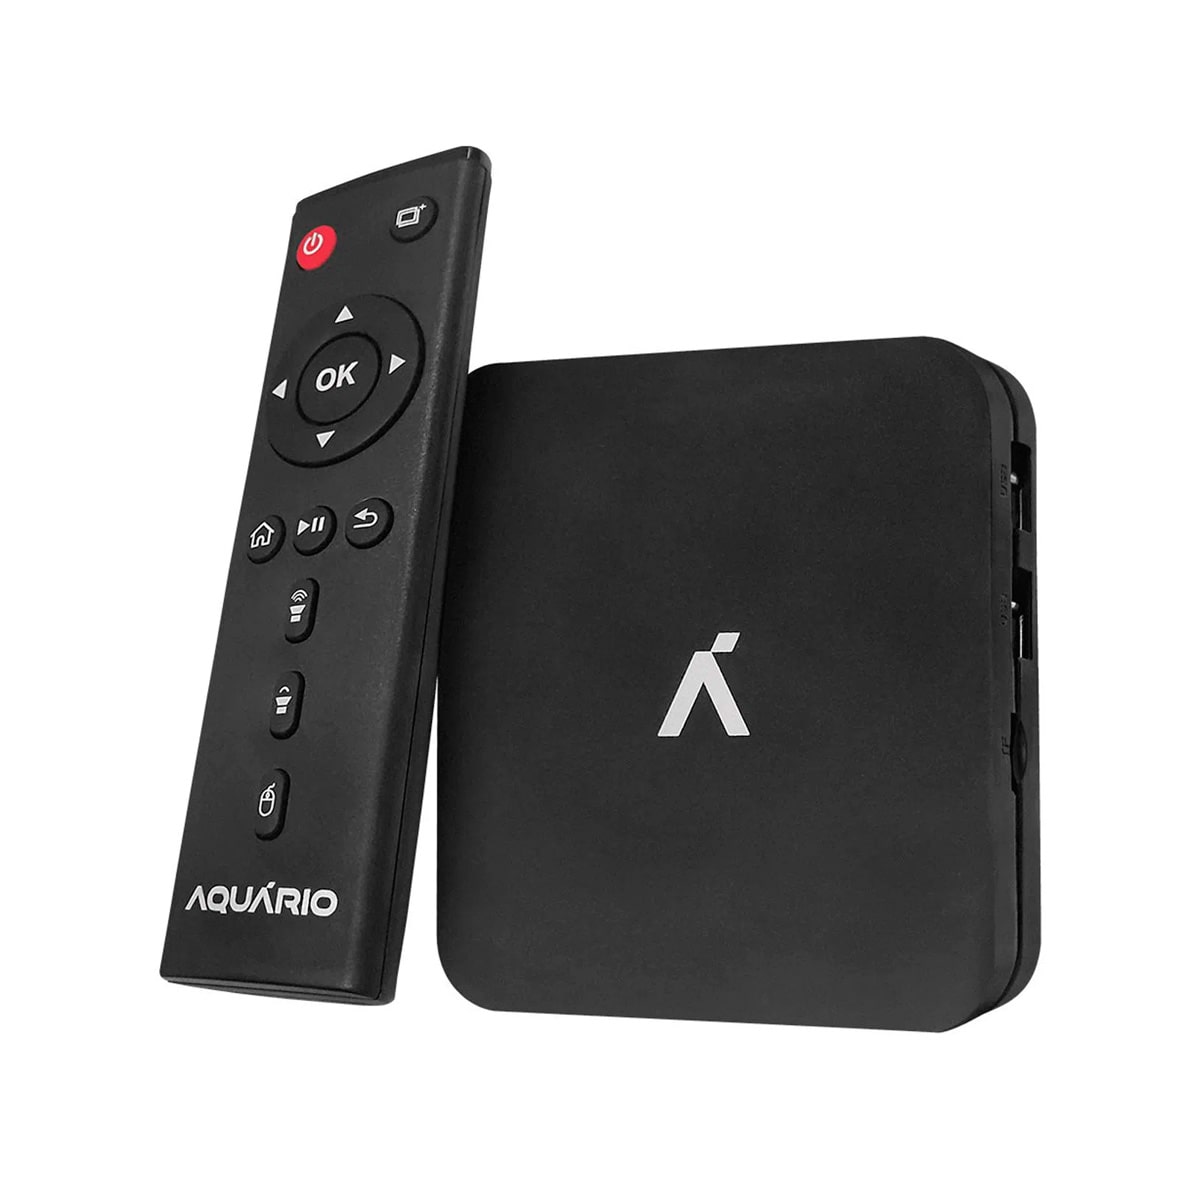 Android Tv Box Aoc Convertidor - Soluciones Informáticas